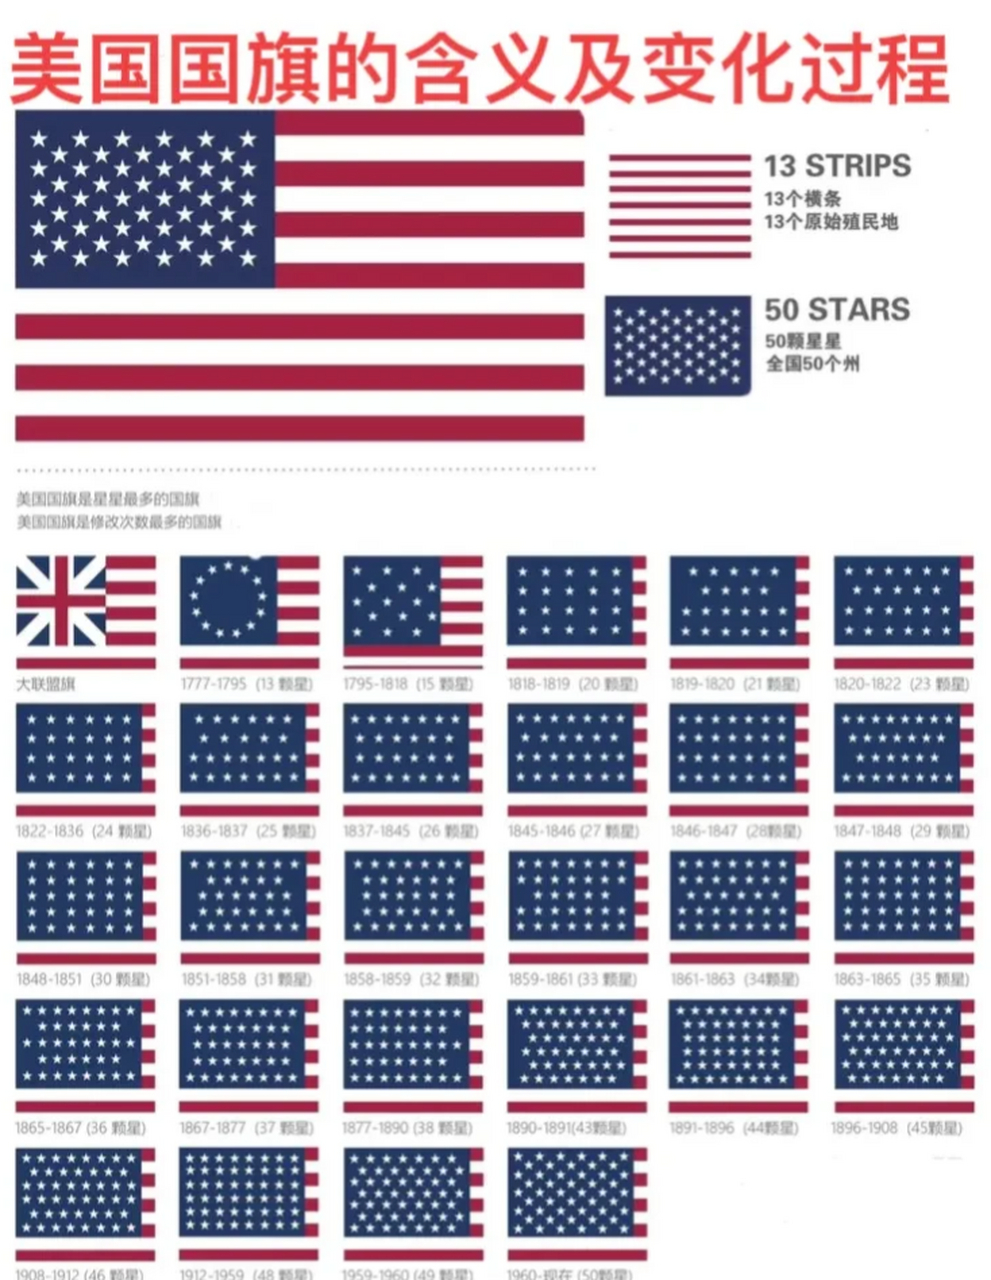 让我们一起揭开这段历史,看看最初的美国国旗是什么样子吧!